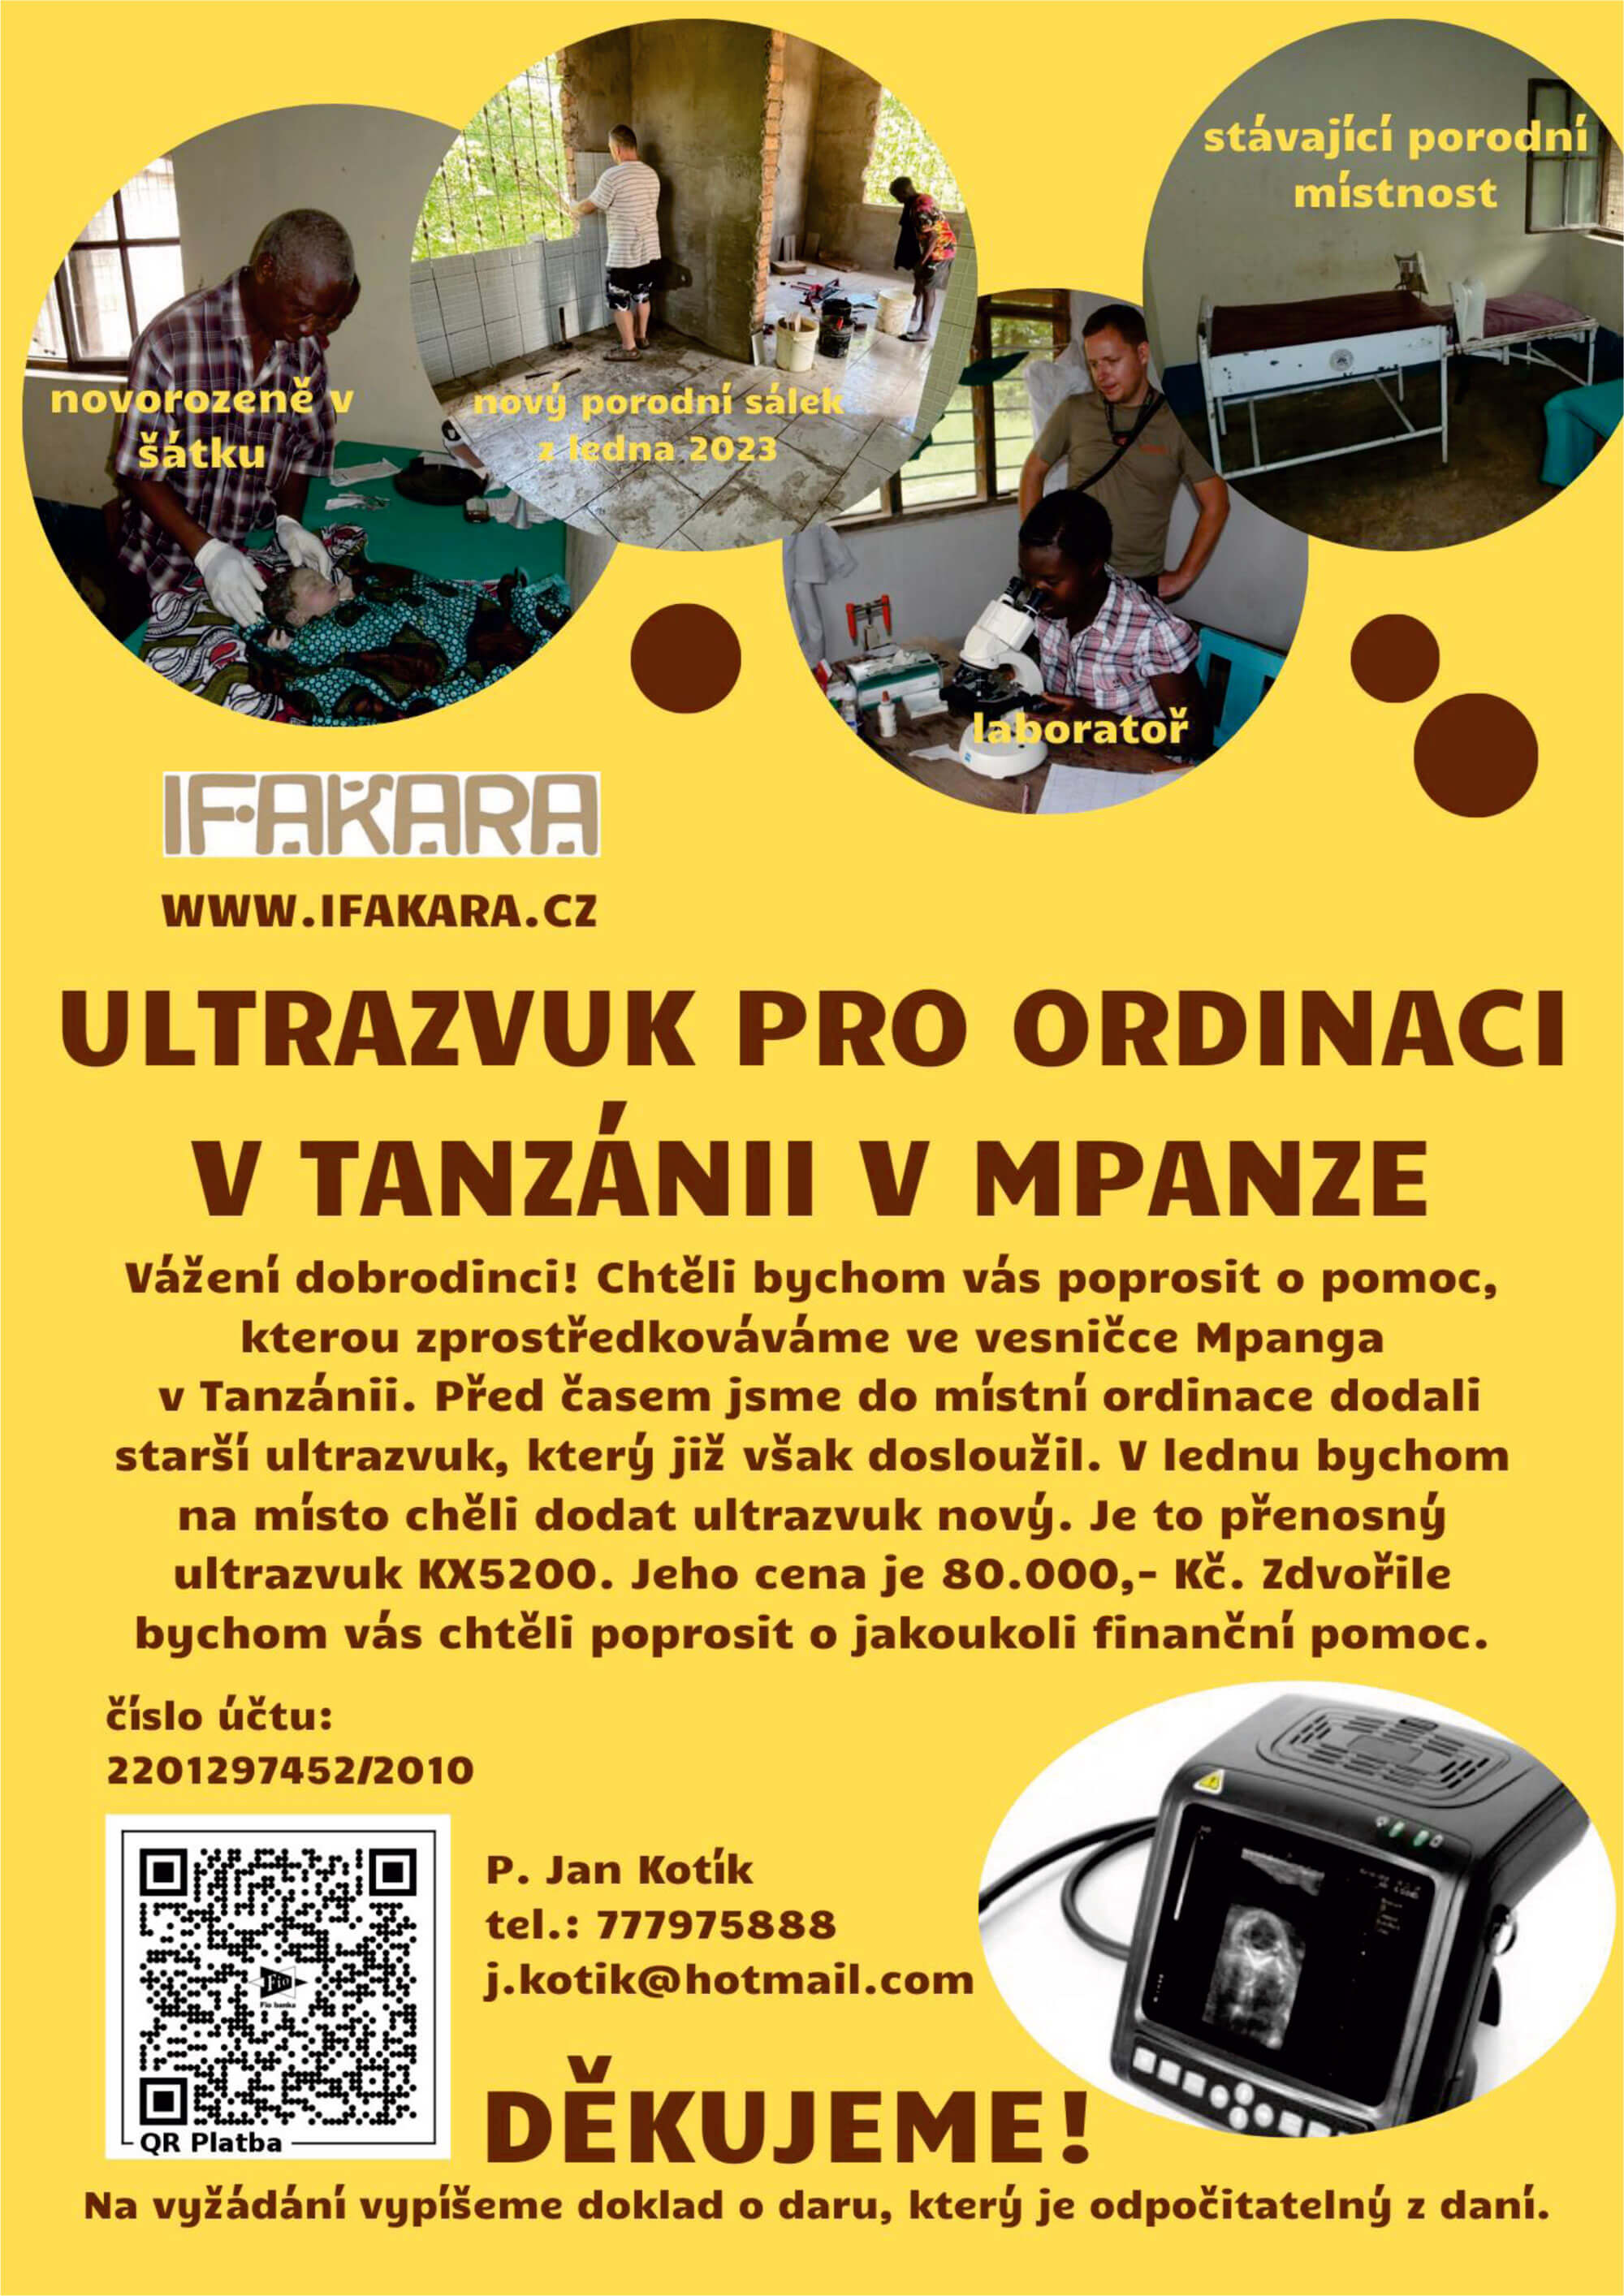 Ultrazvuk pro ordinaci v Mpanze